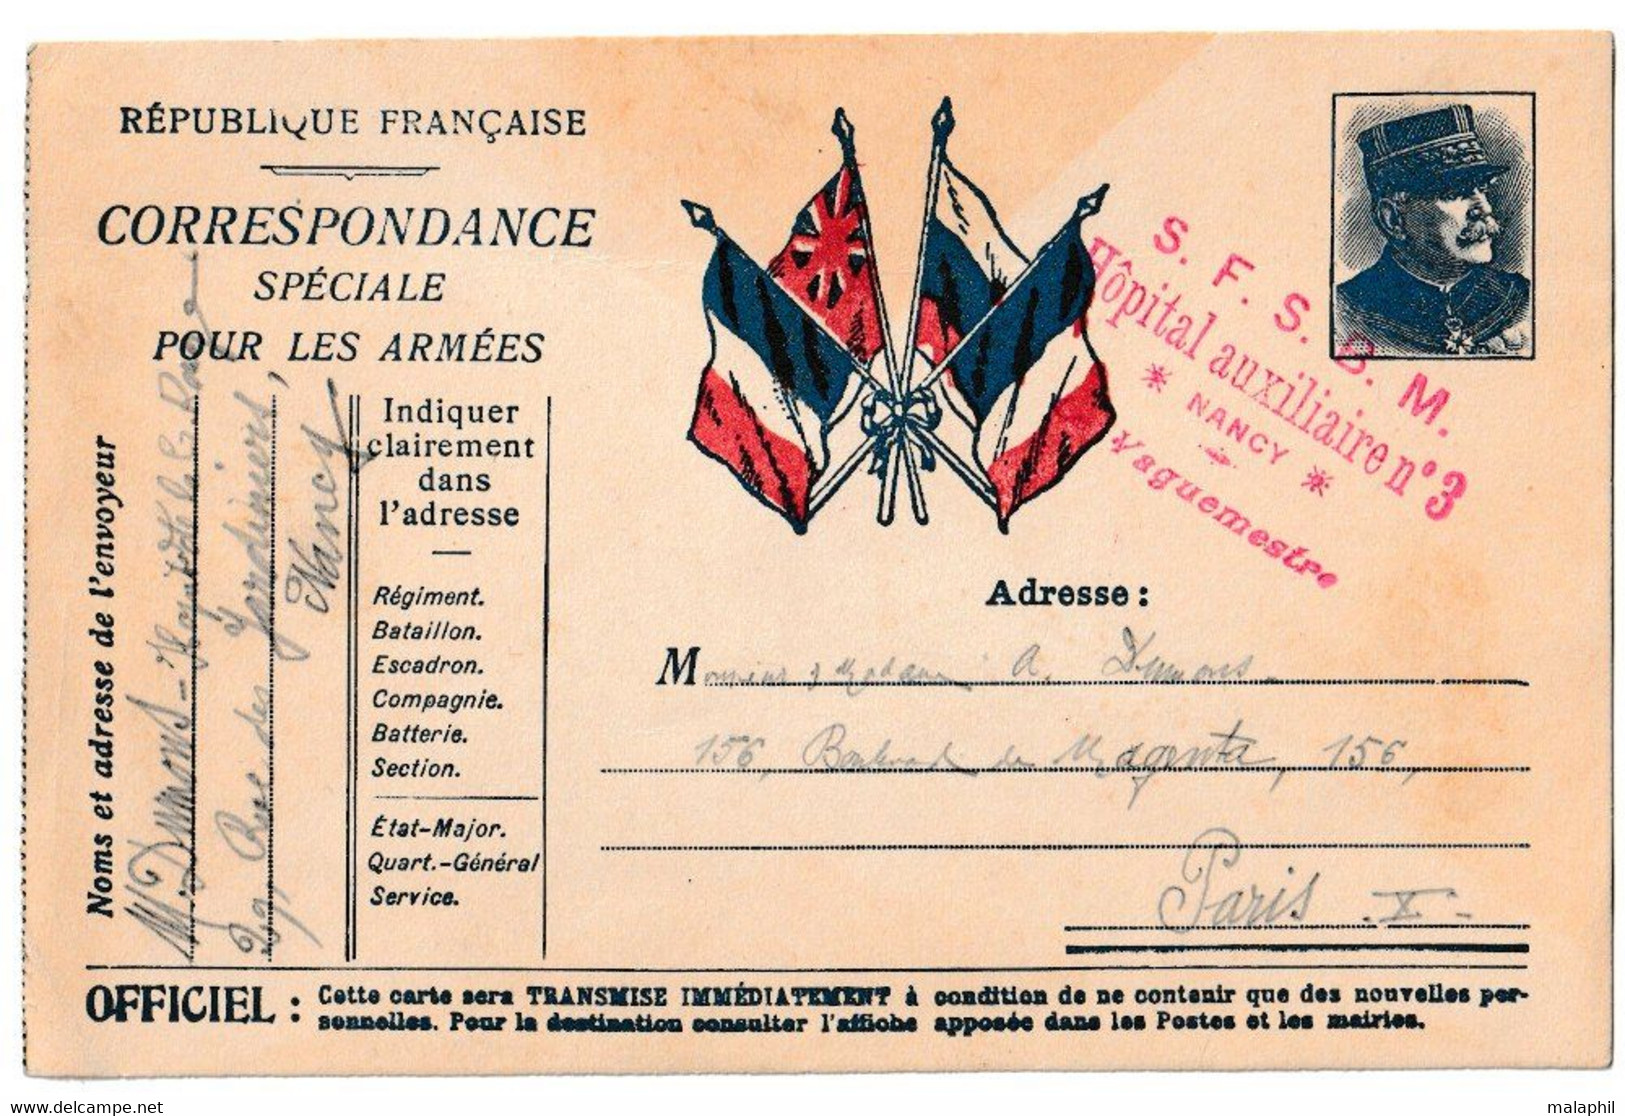 CARTE EN FRANCHISE POSTALE HOPITAL - CORRESPONDANCE MILITAIRE 1914-1918 - EFFIGIE DU MARECHAL JOFFRE - 1914-18